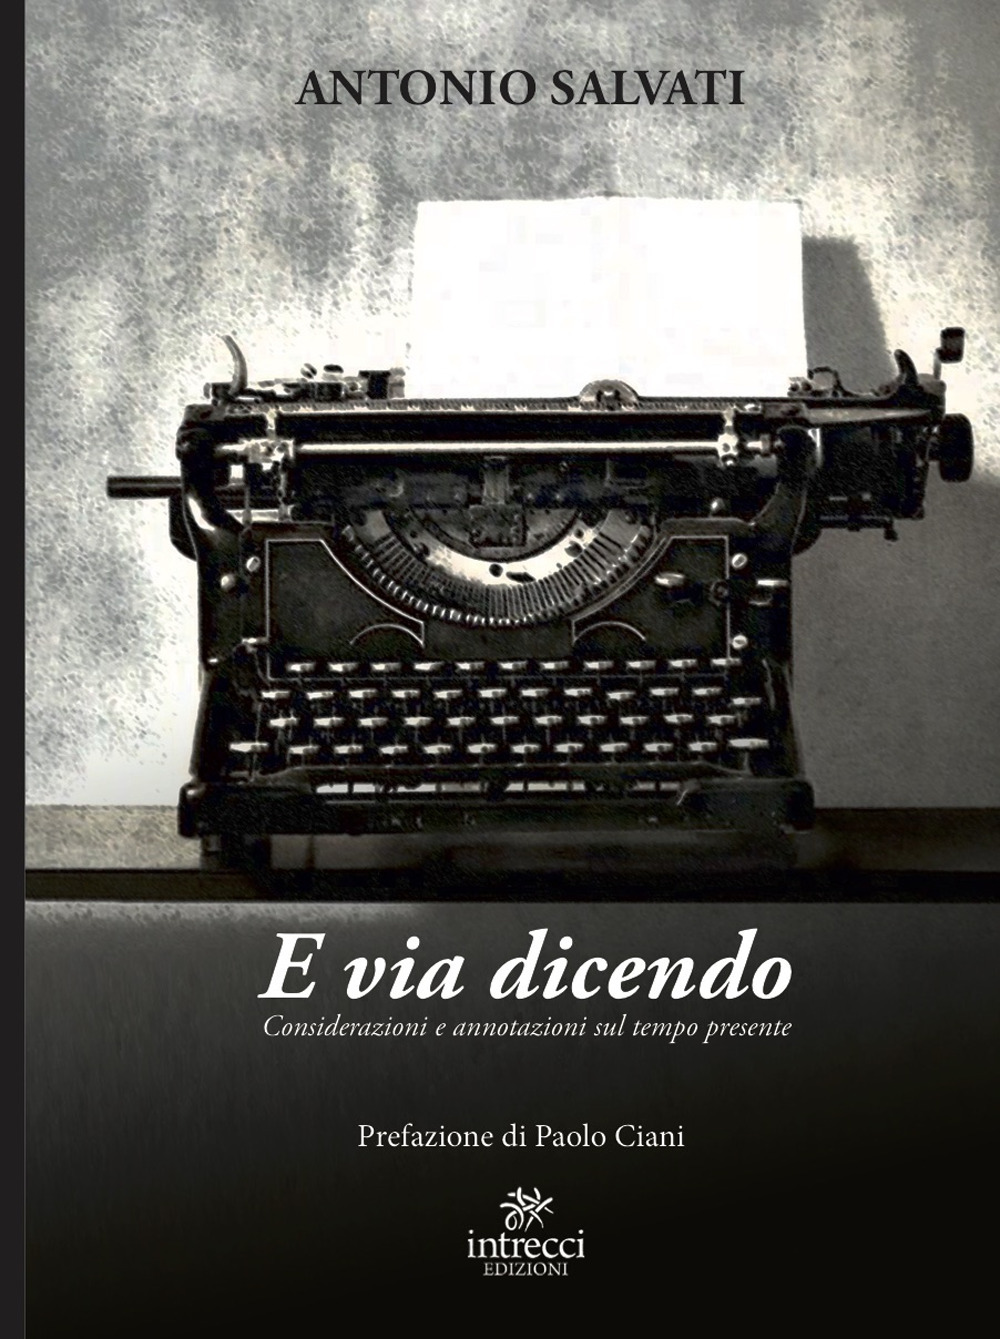 Libri Antonio Salvati - E Via Dicendo NUOVO SIGILLATO, EDIZIONE DEL 22/04/2021 SUBITO DISPONIBILE